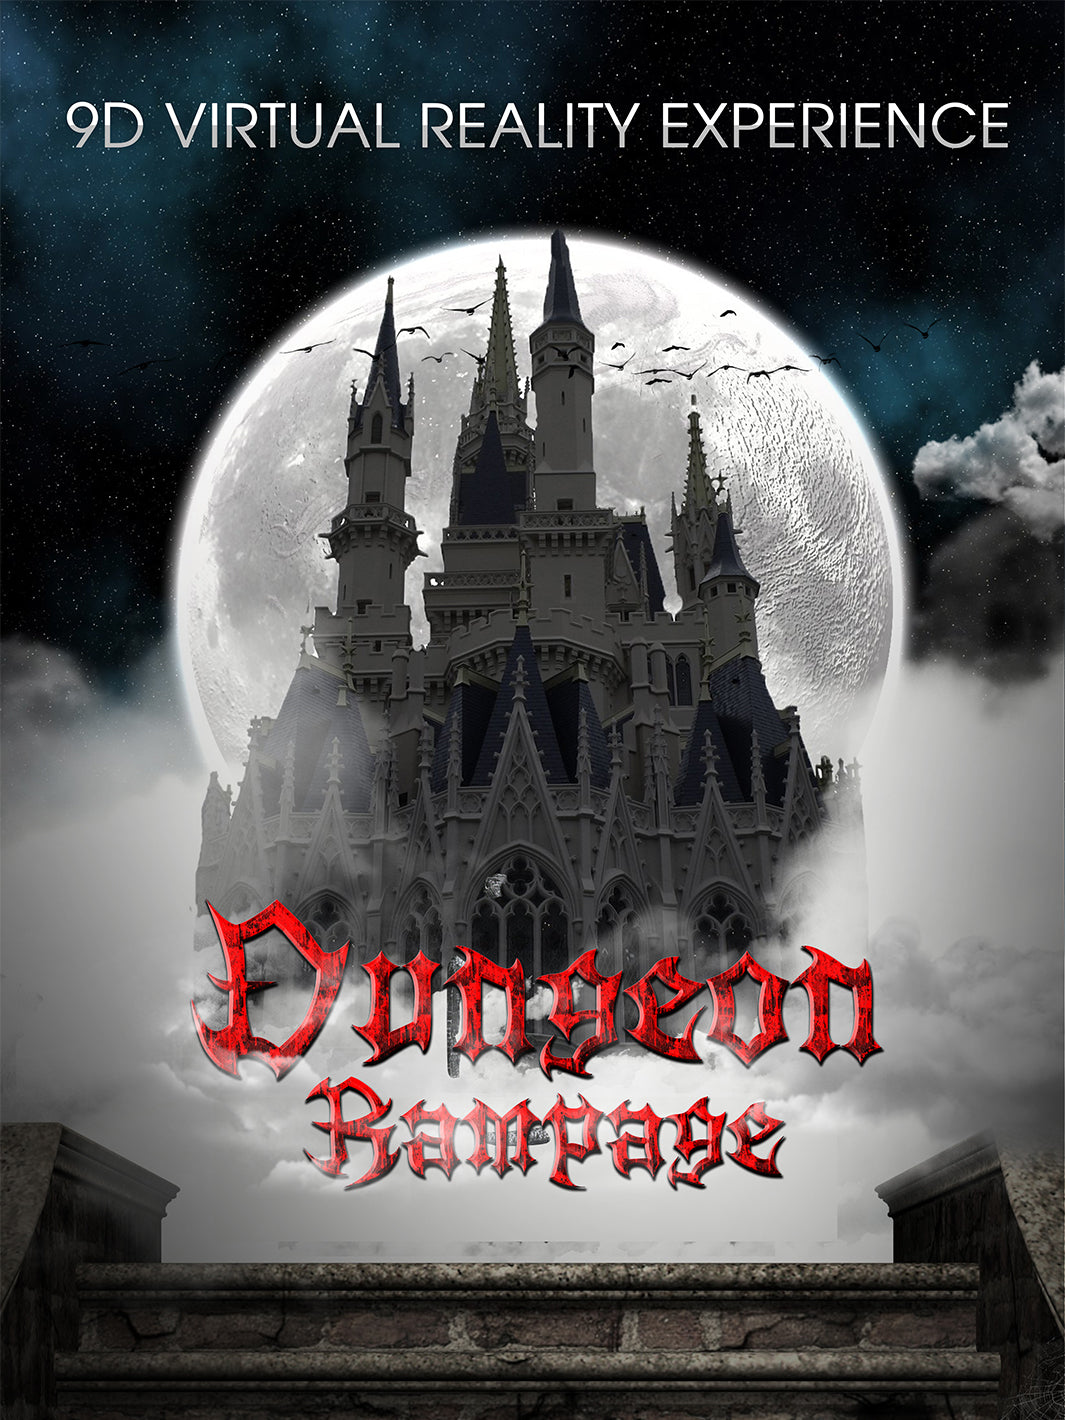 Dungeon Rampage - VR Games – ShallxR